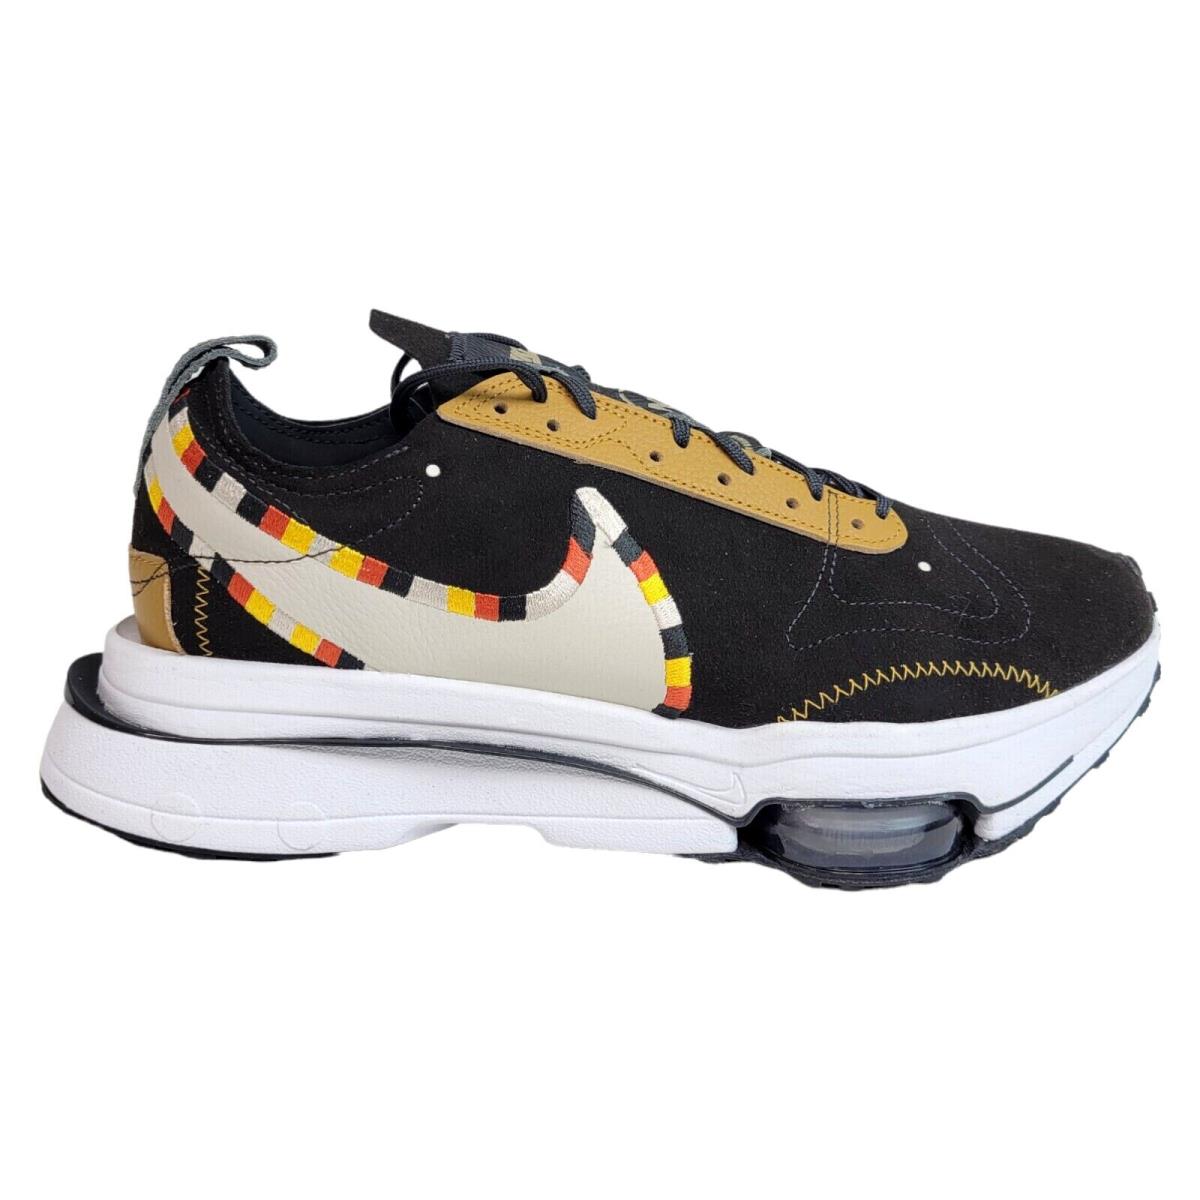 Nike Men 9 11.5 Air Zoom-type N7 Running Shoe DJ6143-001 Black Desert Sand White